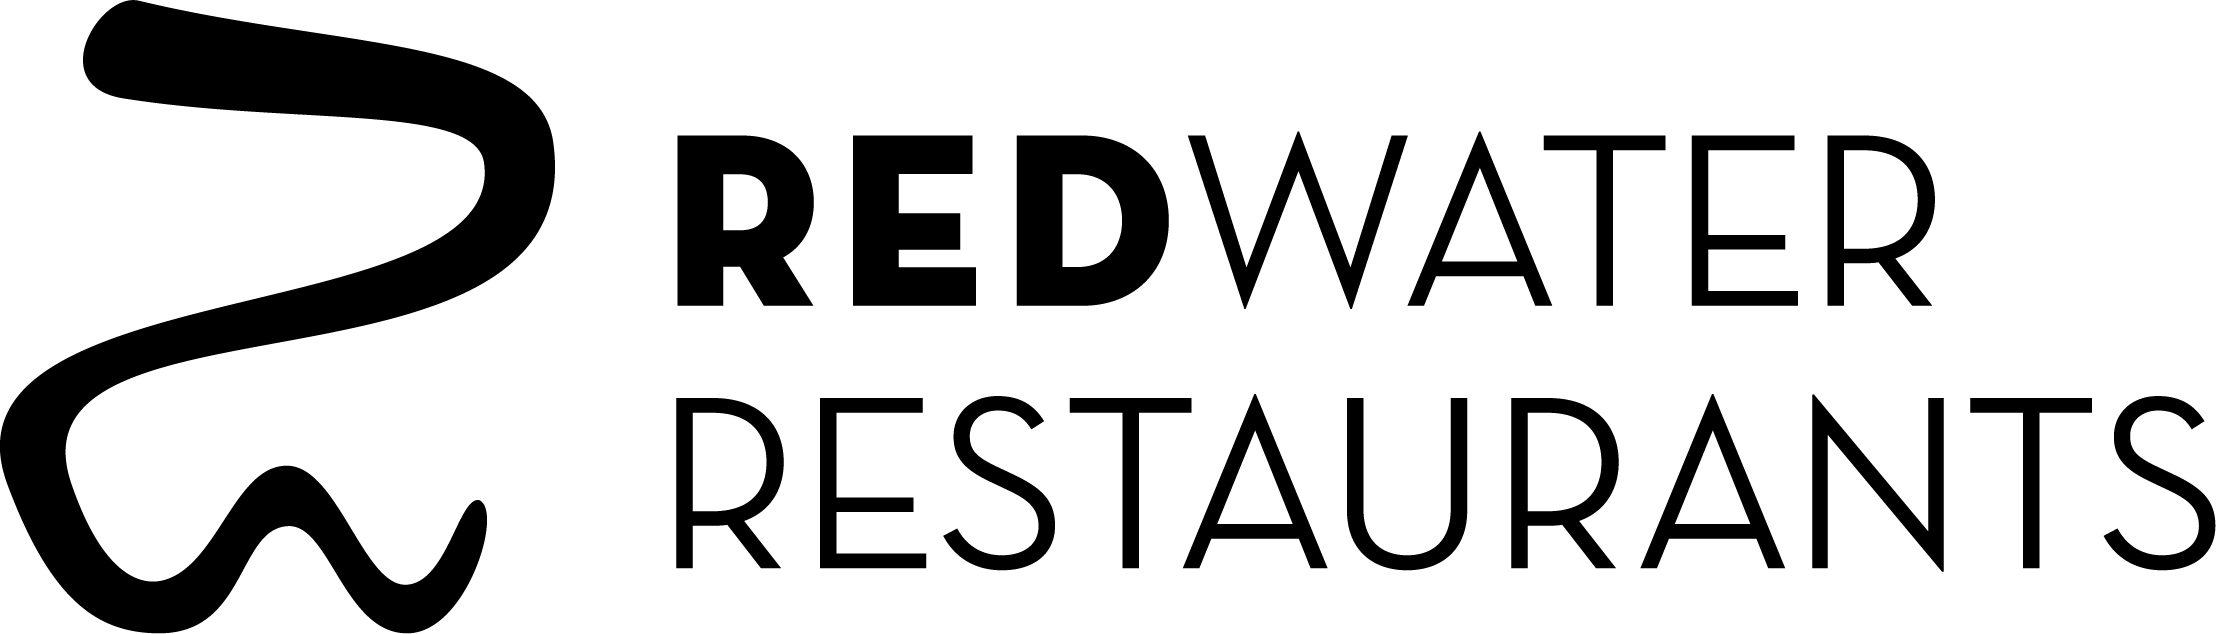 RedWater Resturants Black Logo